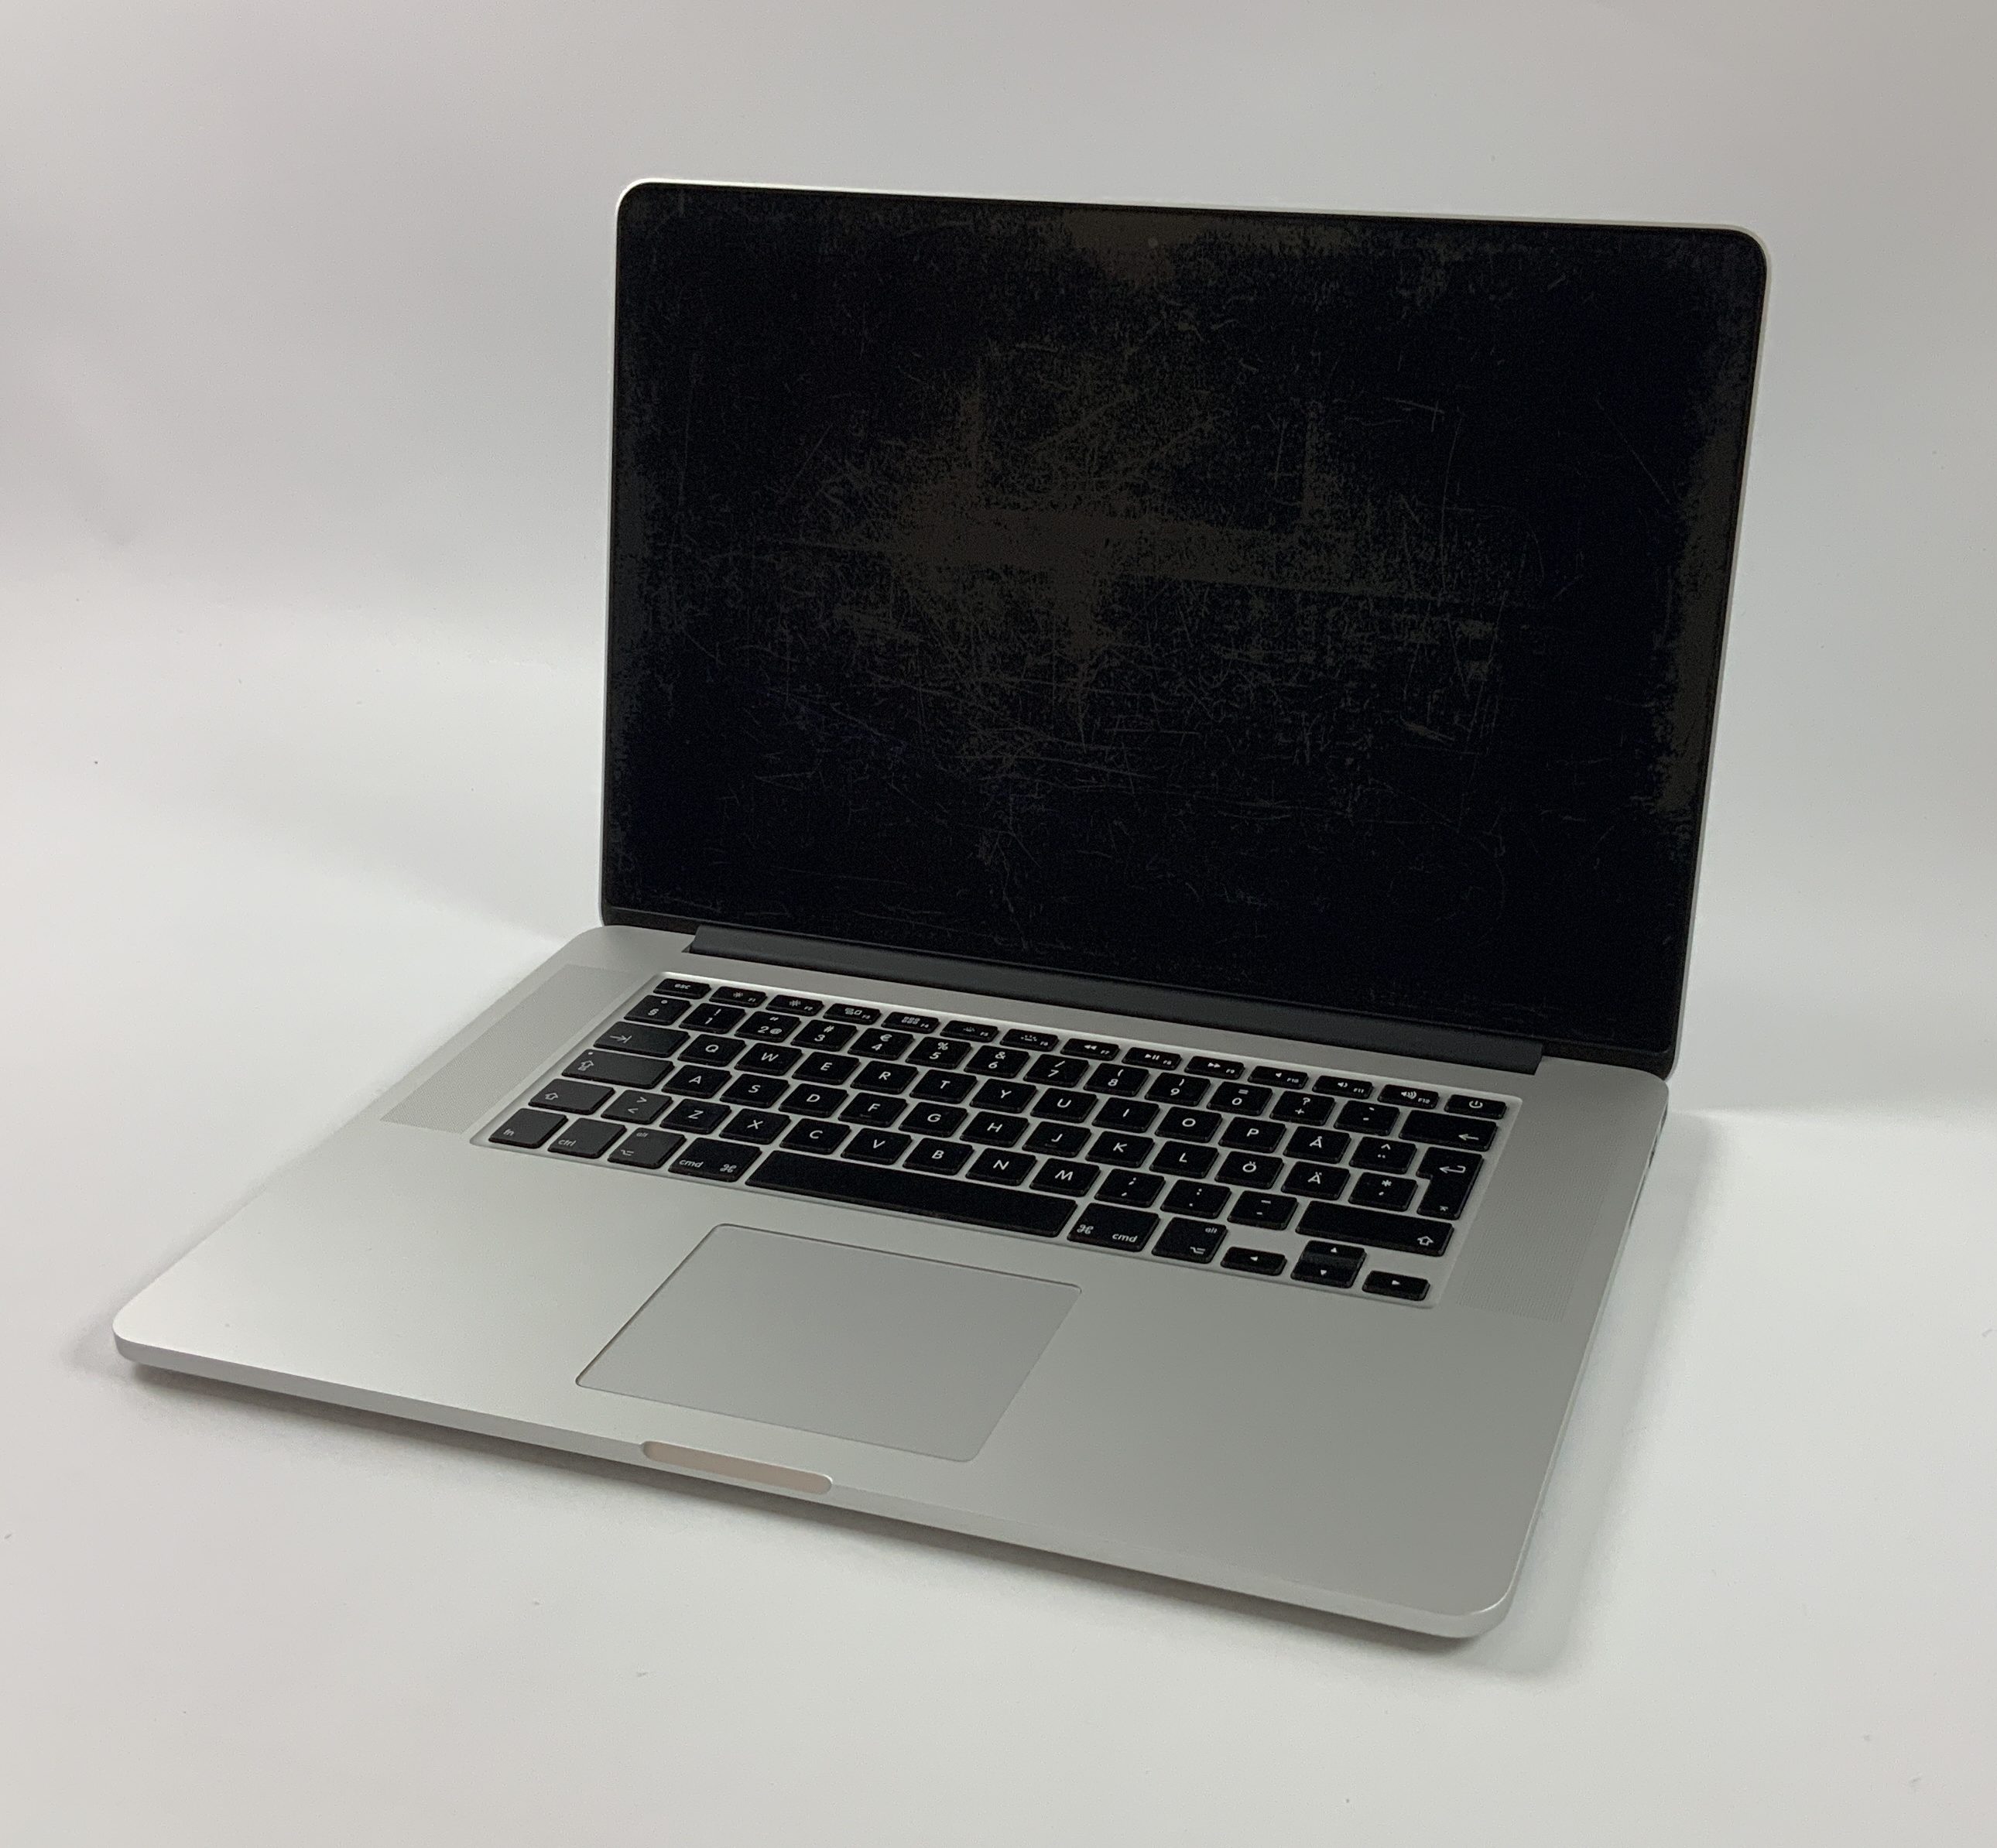 MacBook Pro Retina 15" Mid 2015 (Intel Quad-Core i7 2.2 GHz 16 GB RAM 512 GB SSD), Intel Quad-Core i7 2.2 GHz, 16 GB RAM, 512 GB SSD, Afbeelding 1